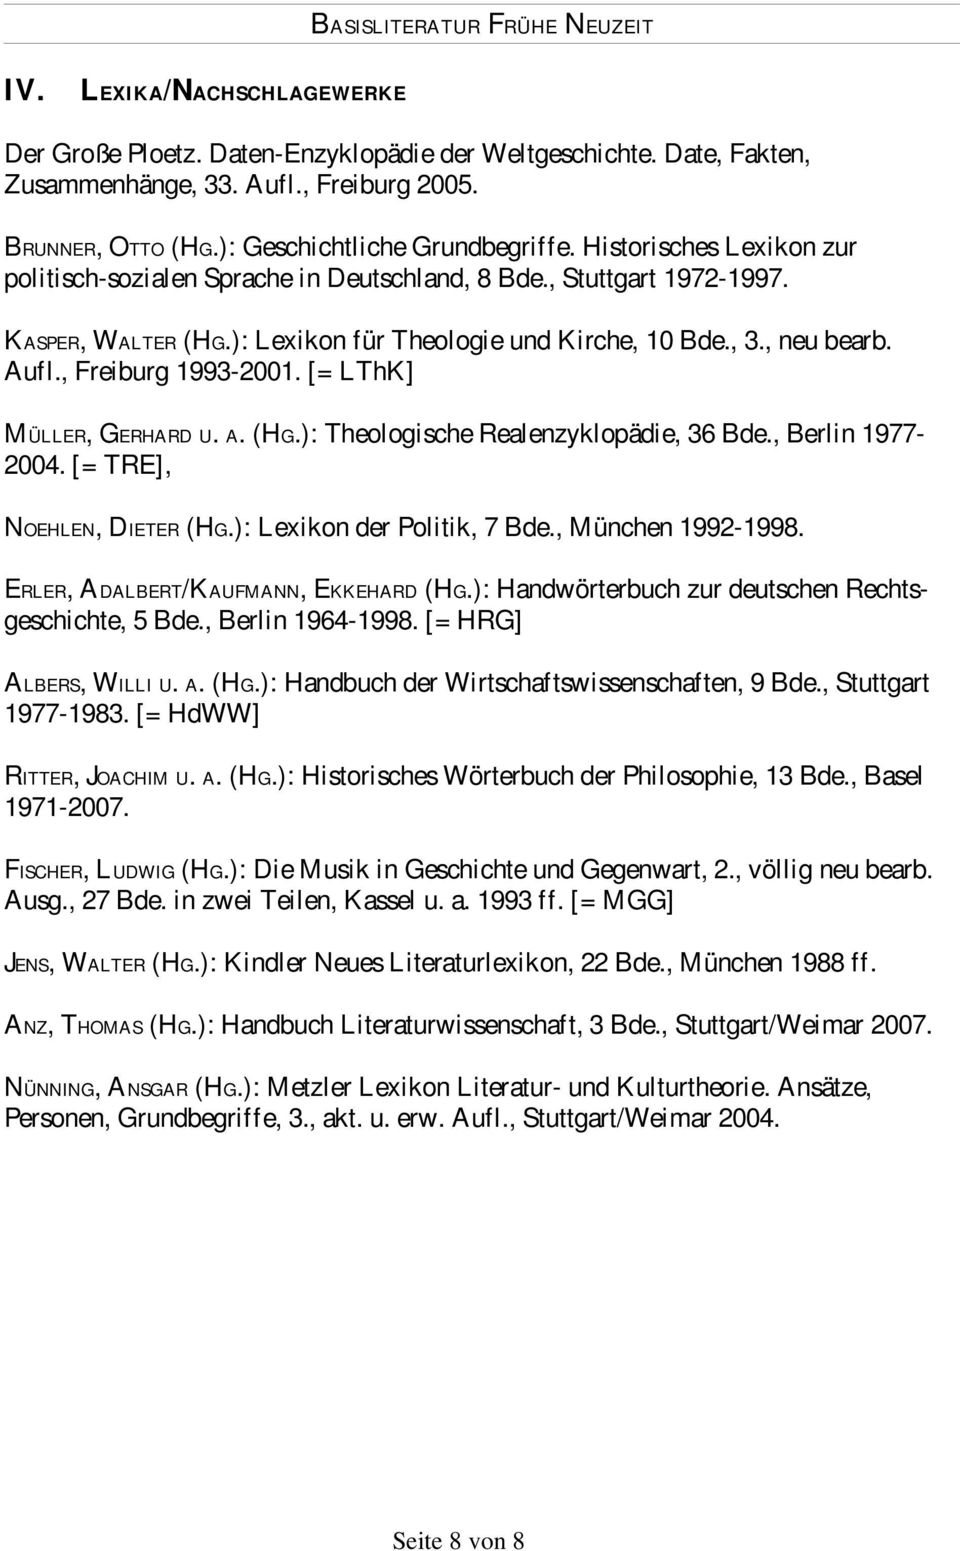 , Freiburg 1993-2001. [= LThK] MÜLLER, GERHARD U. A. (HG.): Theologische Realenzyklopädie, 36 Bde., Berlin 1977-2004. [= TRE], NOEHLEN, DIETER (HG.): Lexikon der Politik, 7 Bde., München 1992-1998.